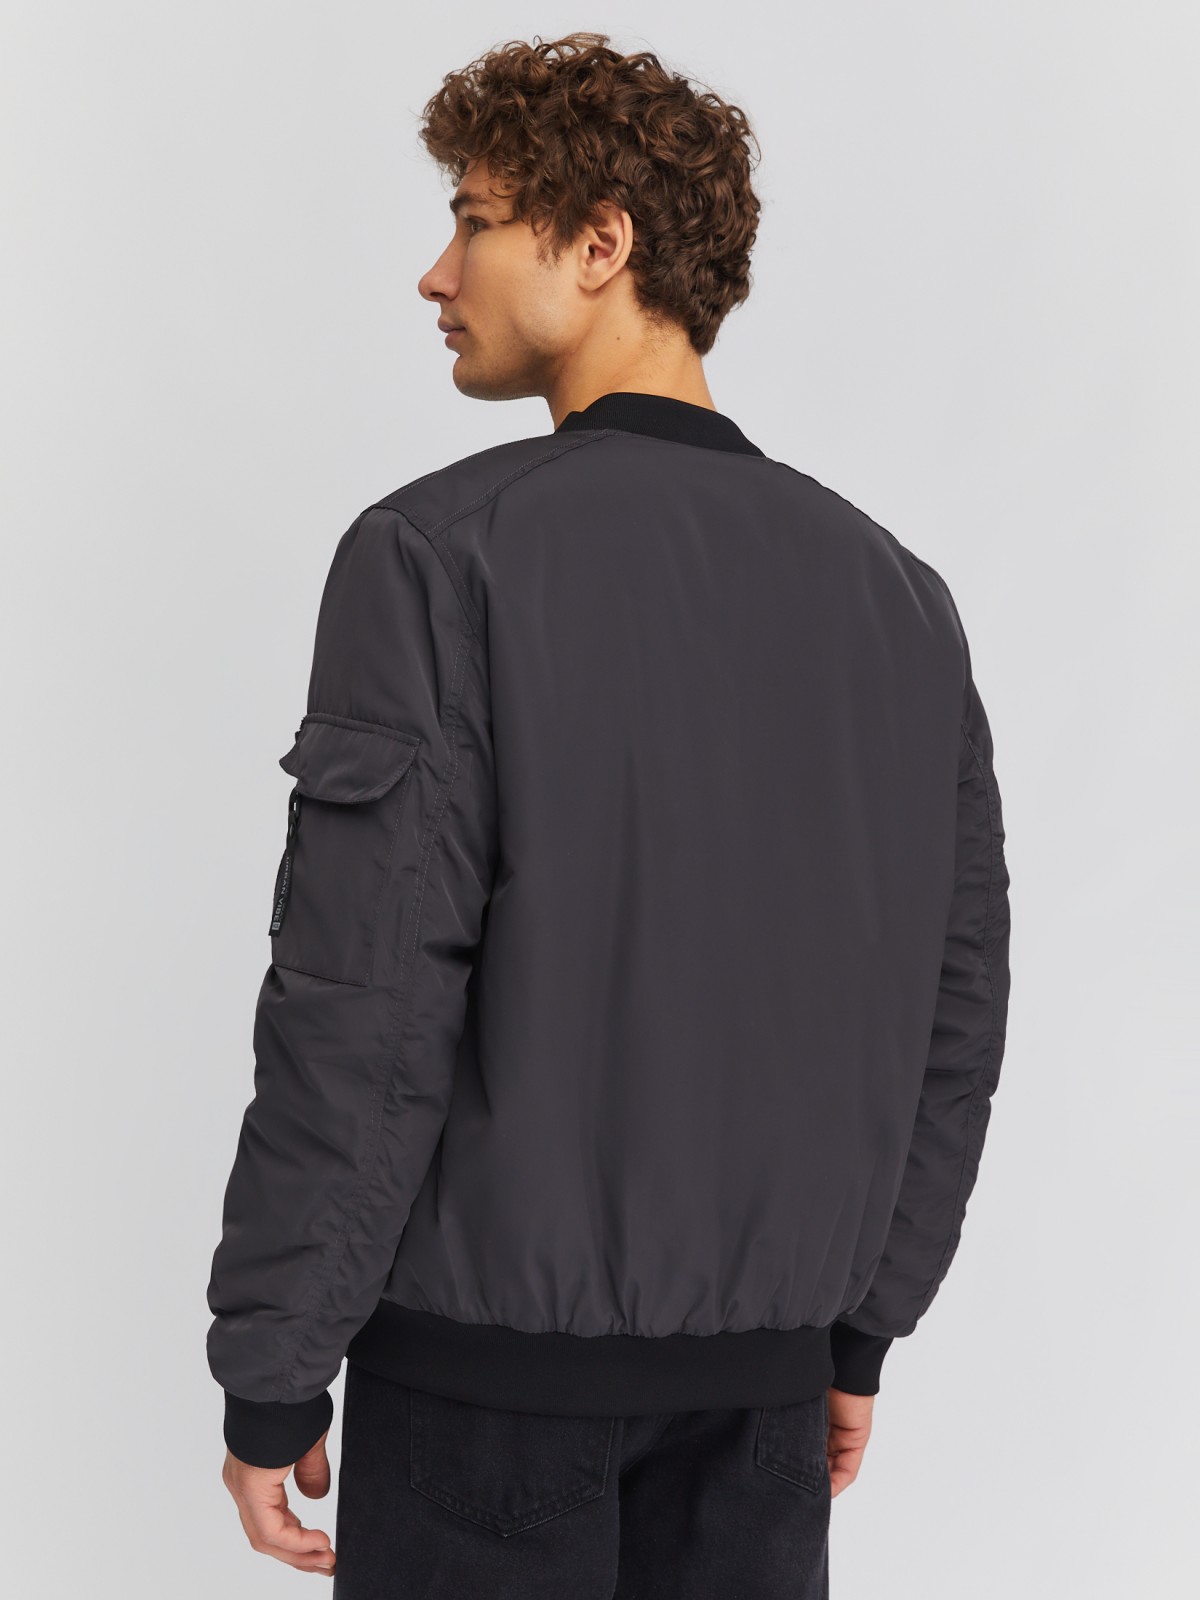 Утеплённая куртка-бомбер с воротником-стойкой zolla 014135102014, цвет серый, размер M - фото 6